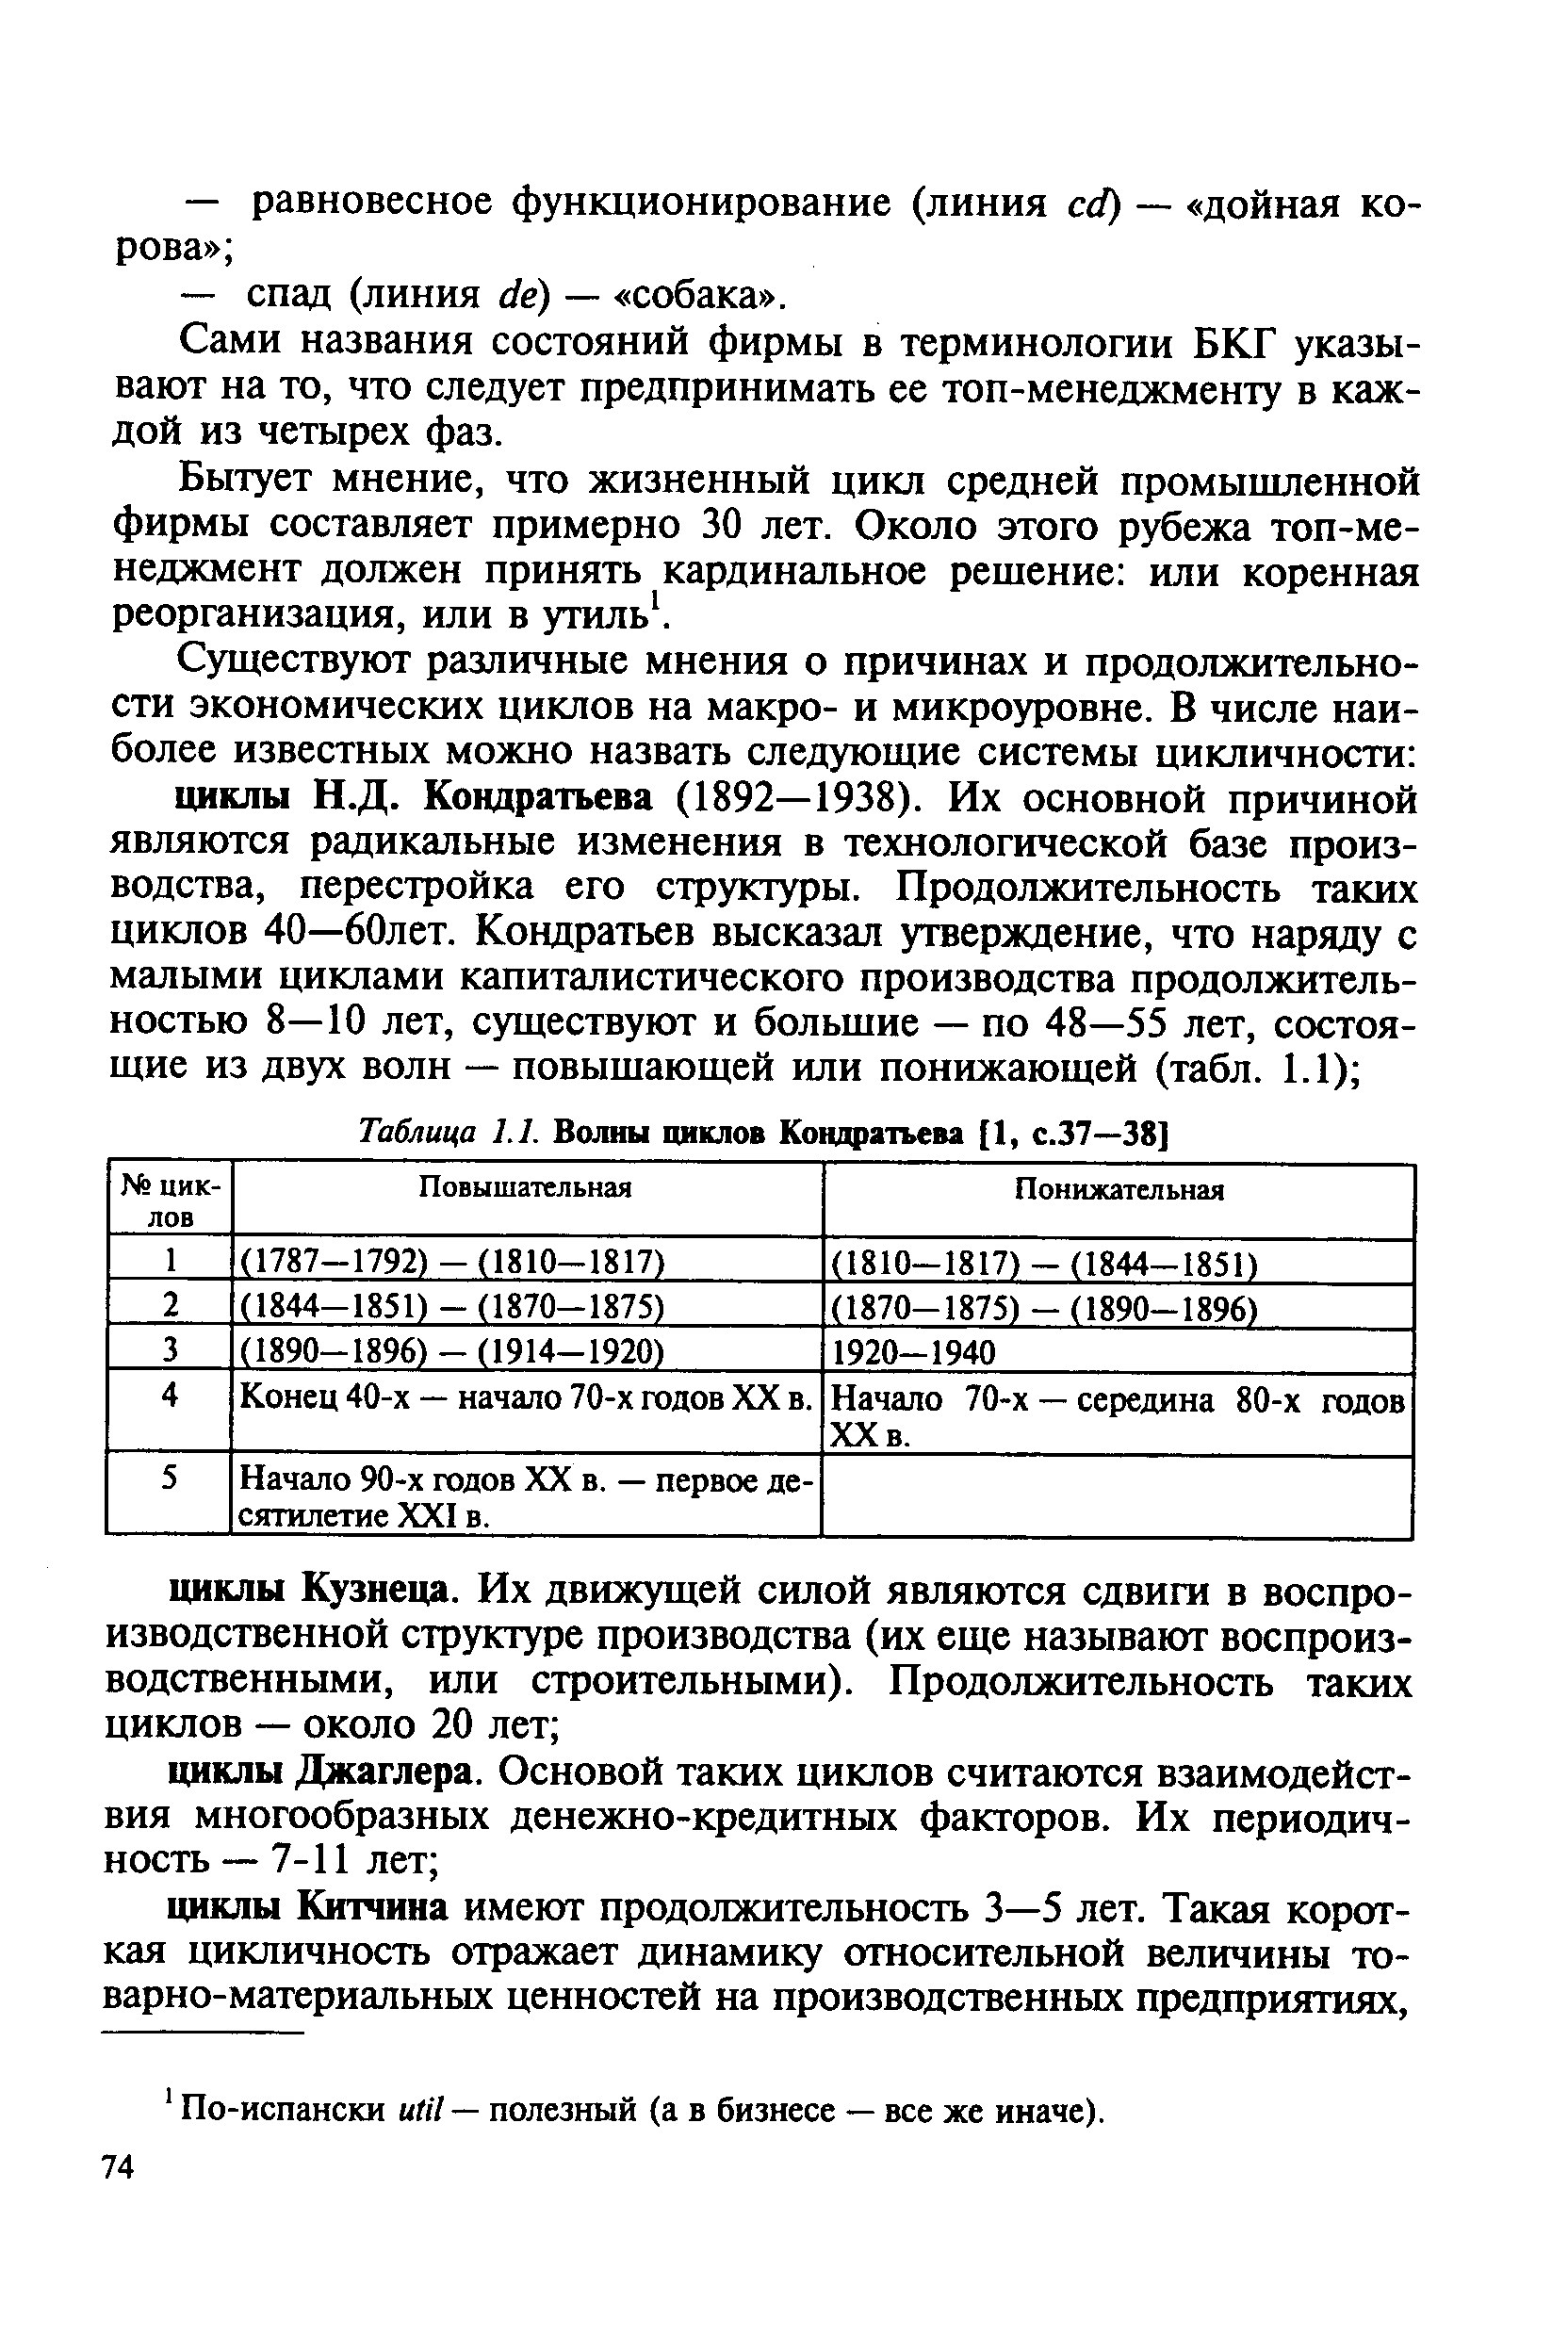 Таблица 1.1. Волны циклов Кондратьева [1, с.37—38]
